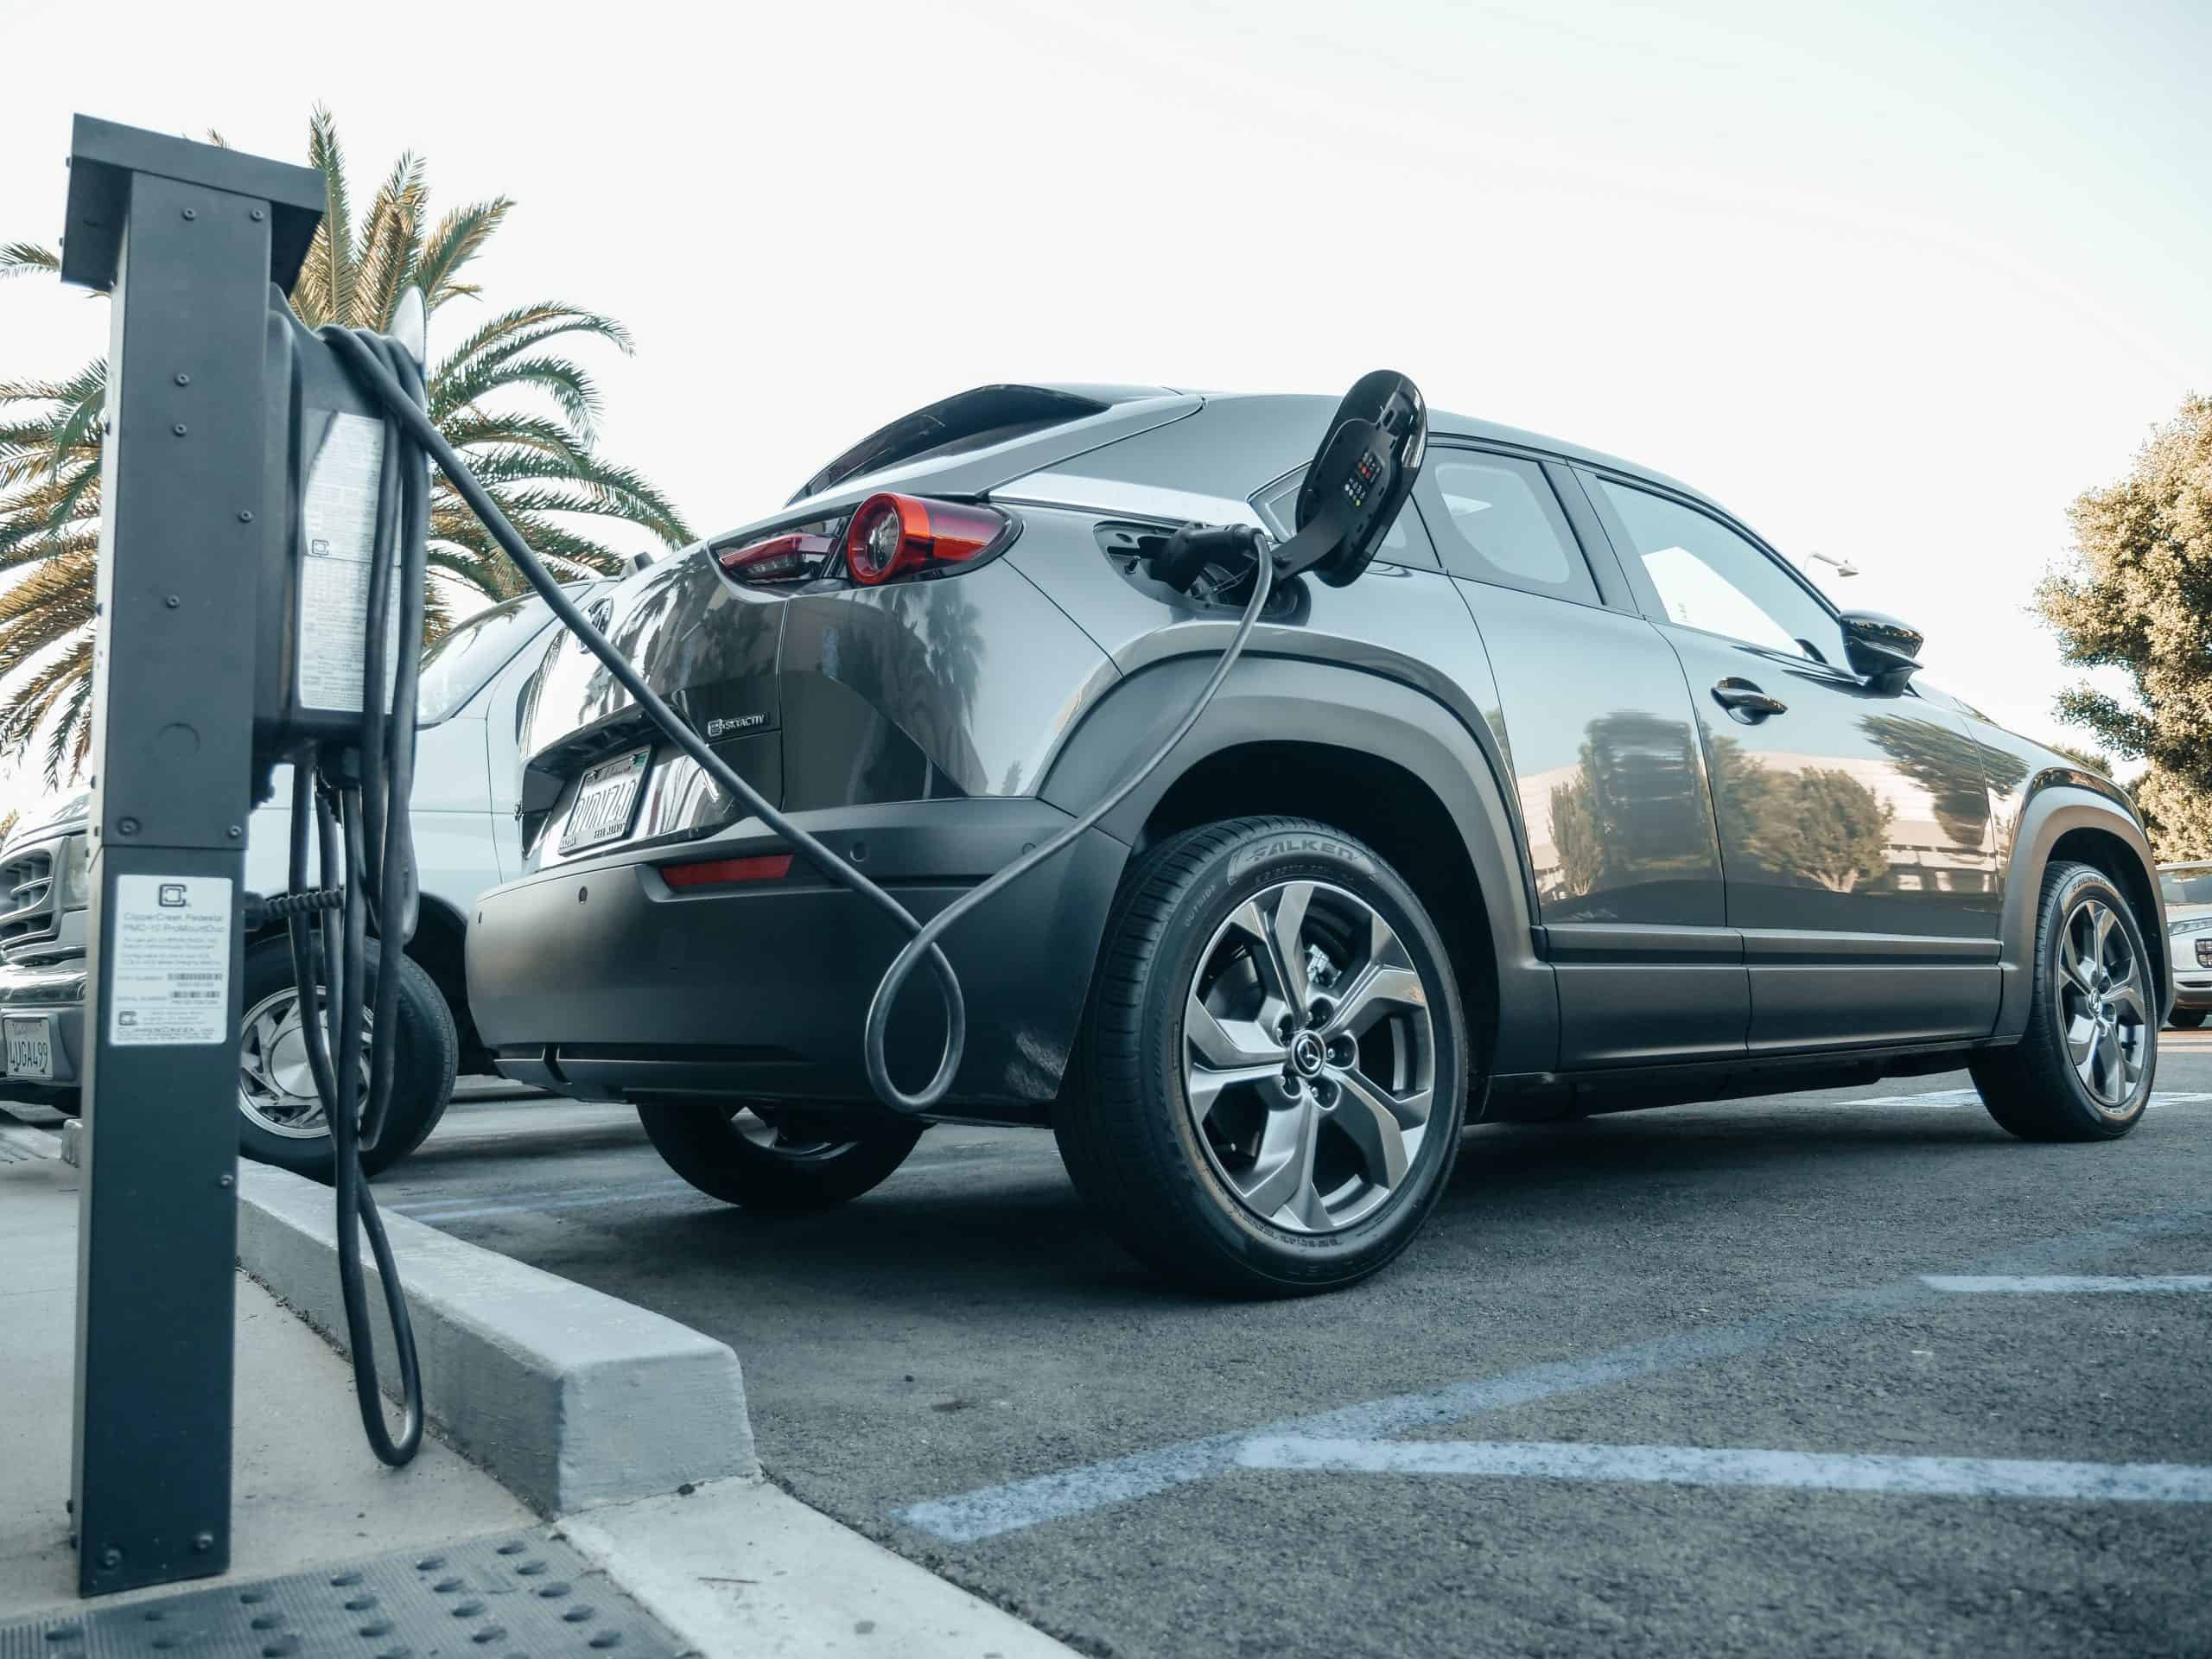 Imposto de importação para carros elétricos e híbridos terá alta gradual a partir de janeiro, visando fortalecer a indústria nacional e reduzir emissões.